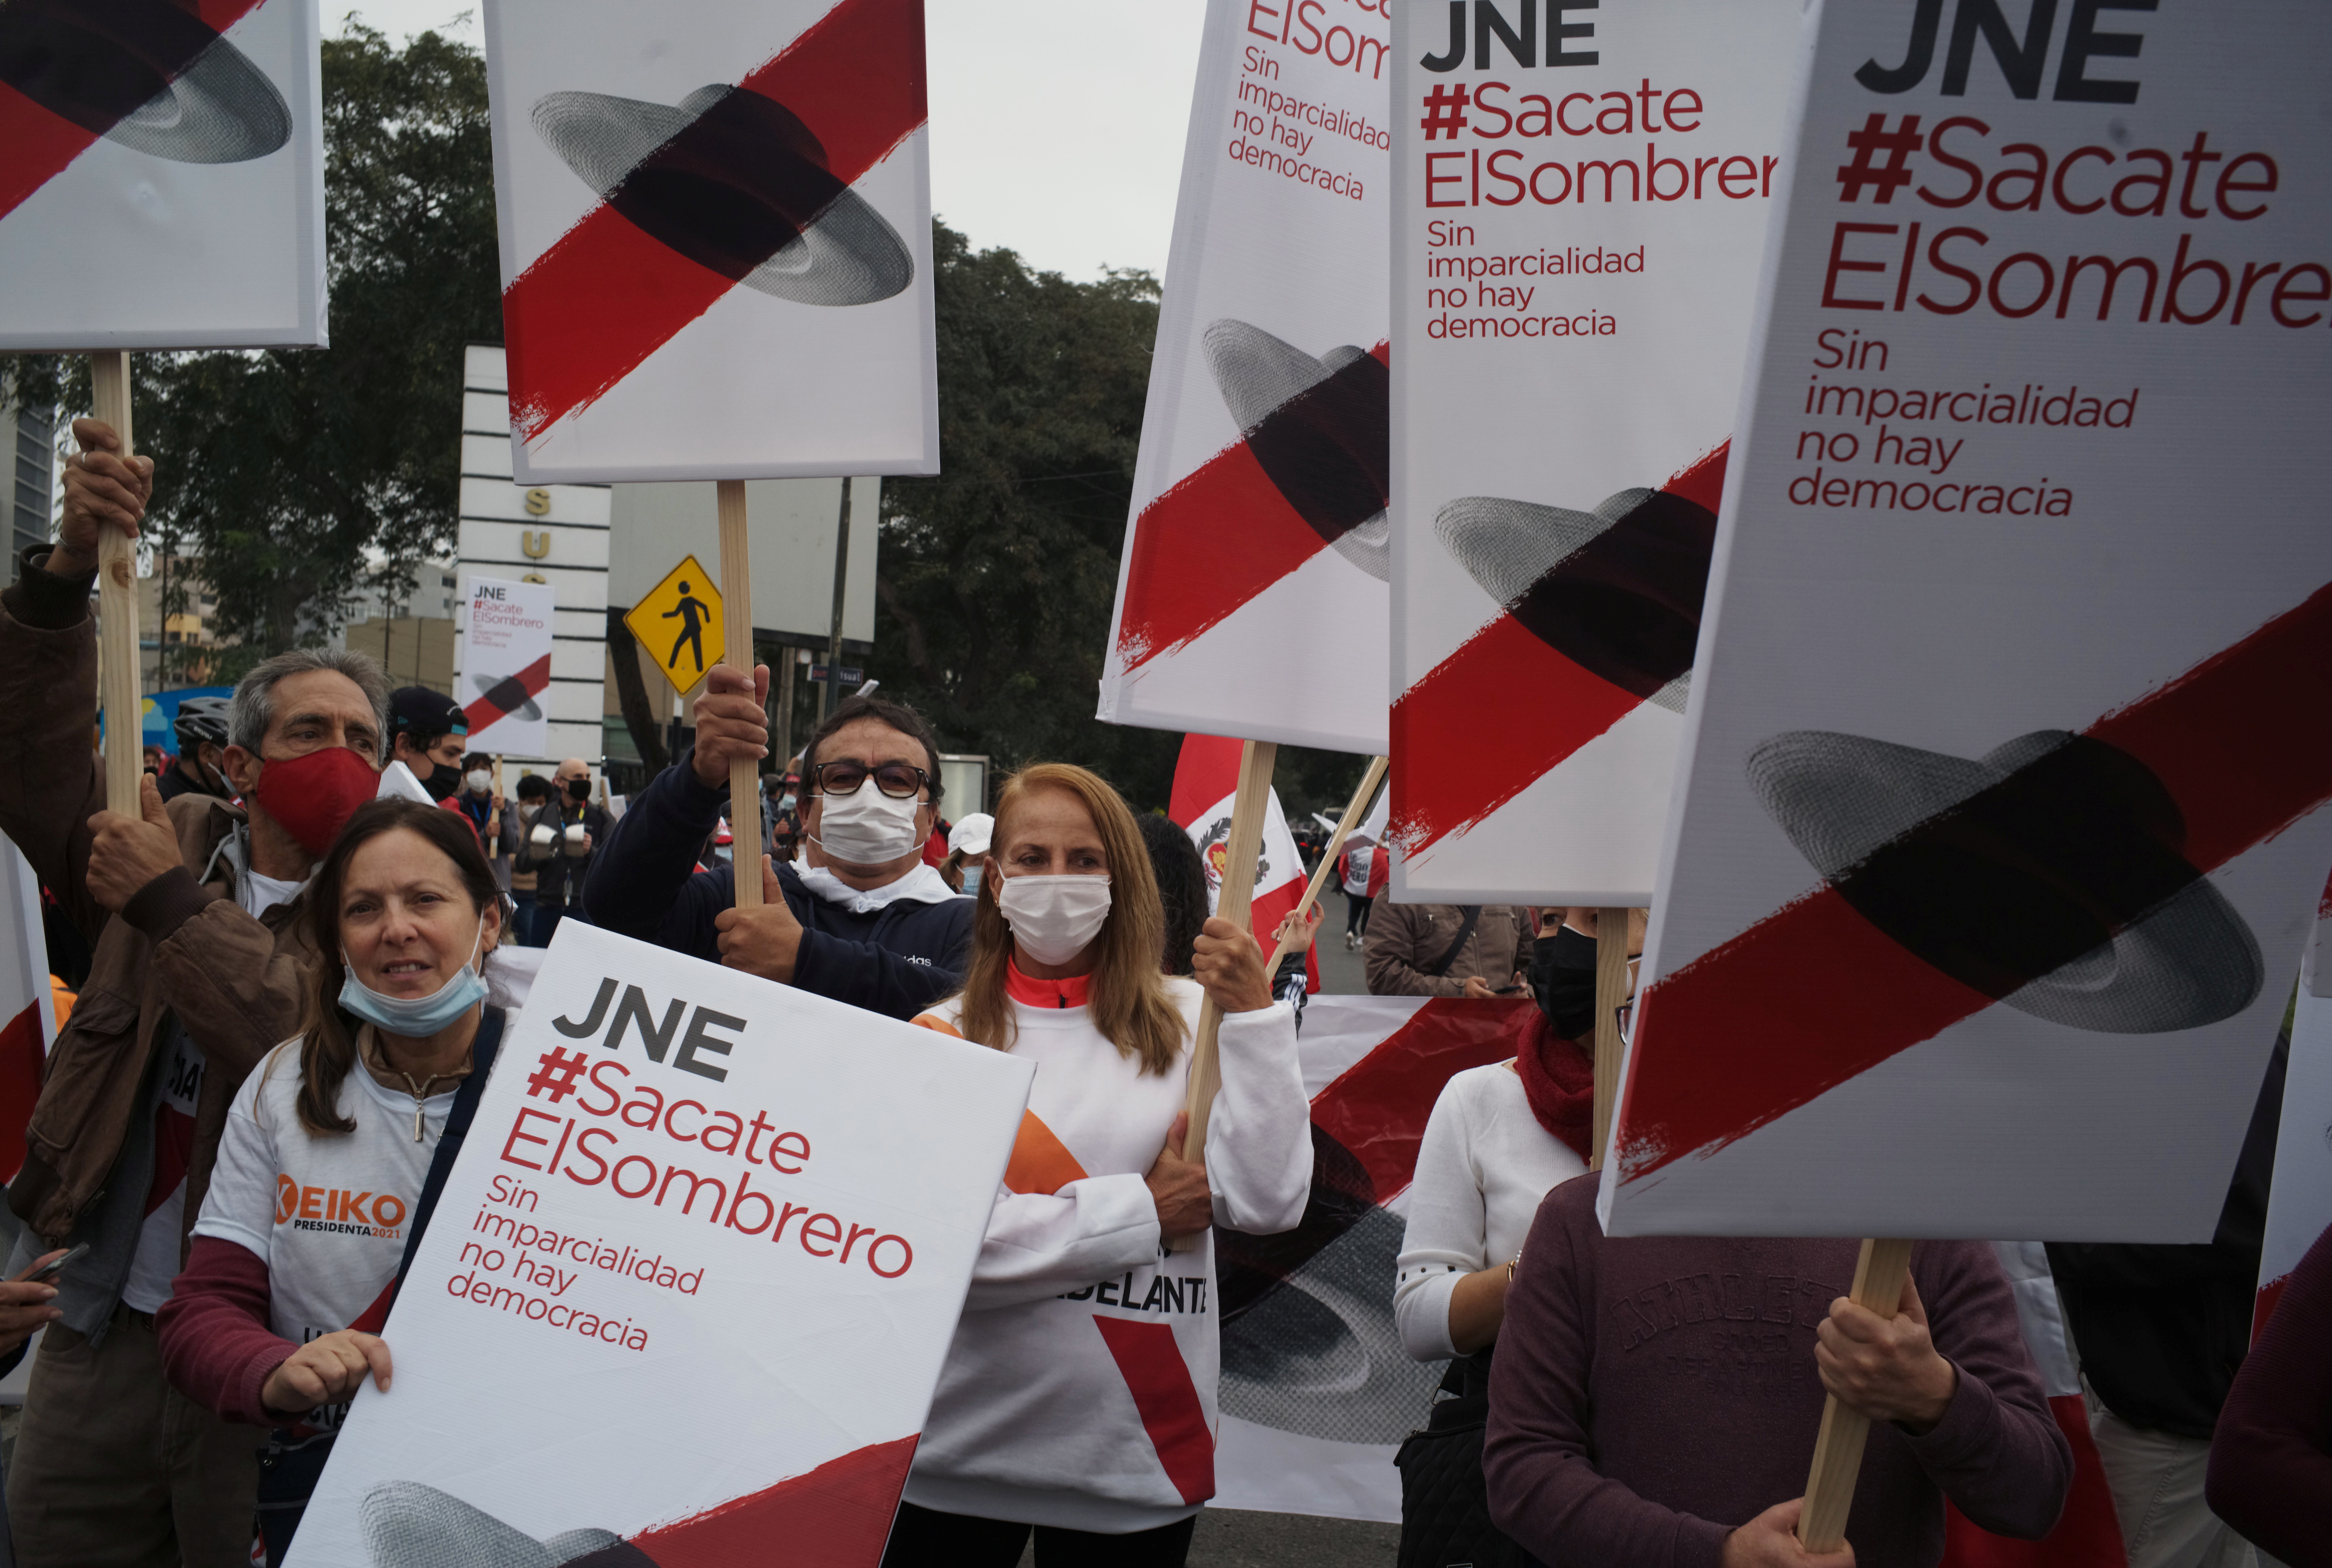 Simpatizantes de la candidata presidencial de Perú Keiko Fujimori sostienen carteles que dicen "Jurado Nacional de Elección (JNE) #Takeyourhatoff, sin imparcialidad no hay democracia" durante una manifestación en Lima, Perú, el 12 de junio de 2021. REUTERS / Alessandro Cinque